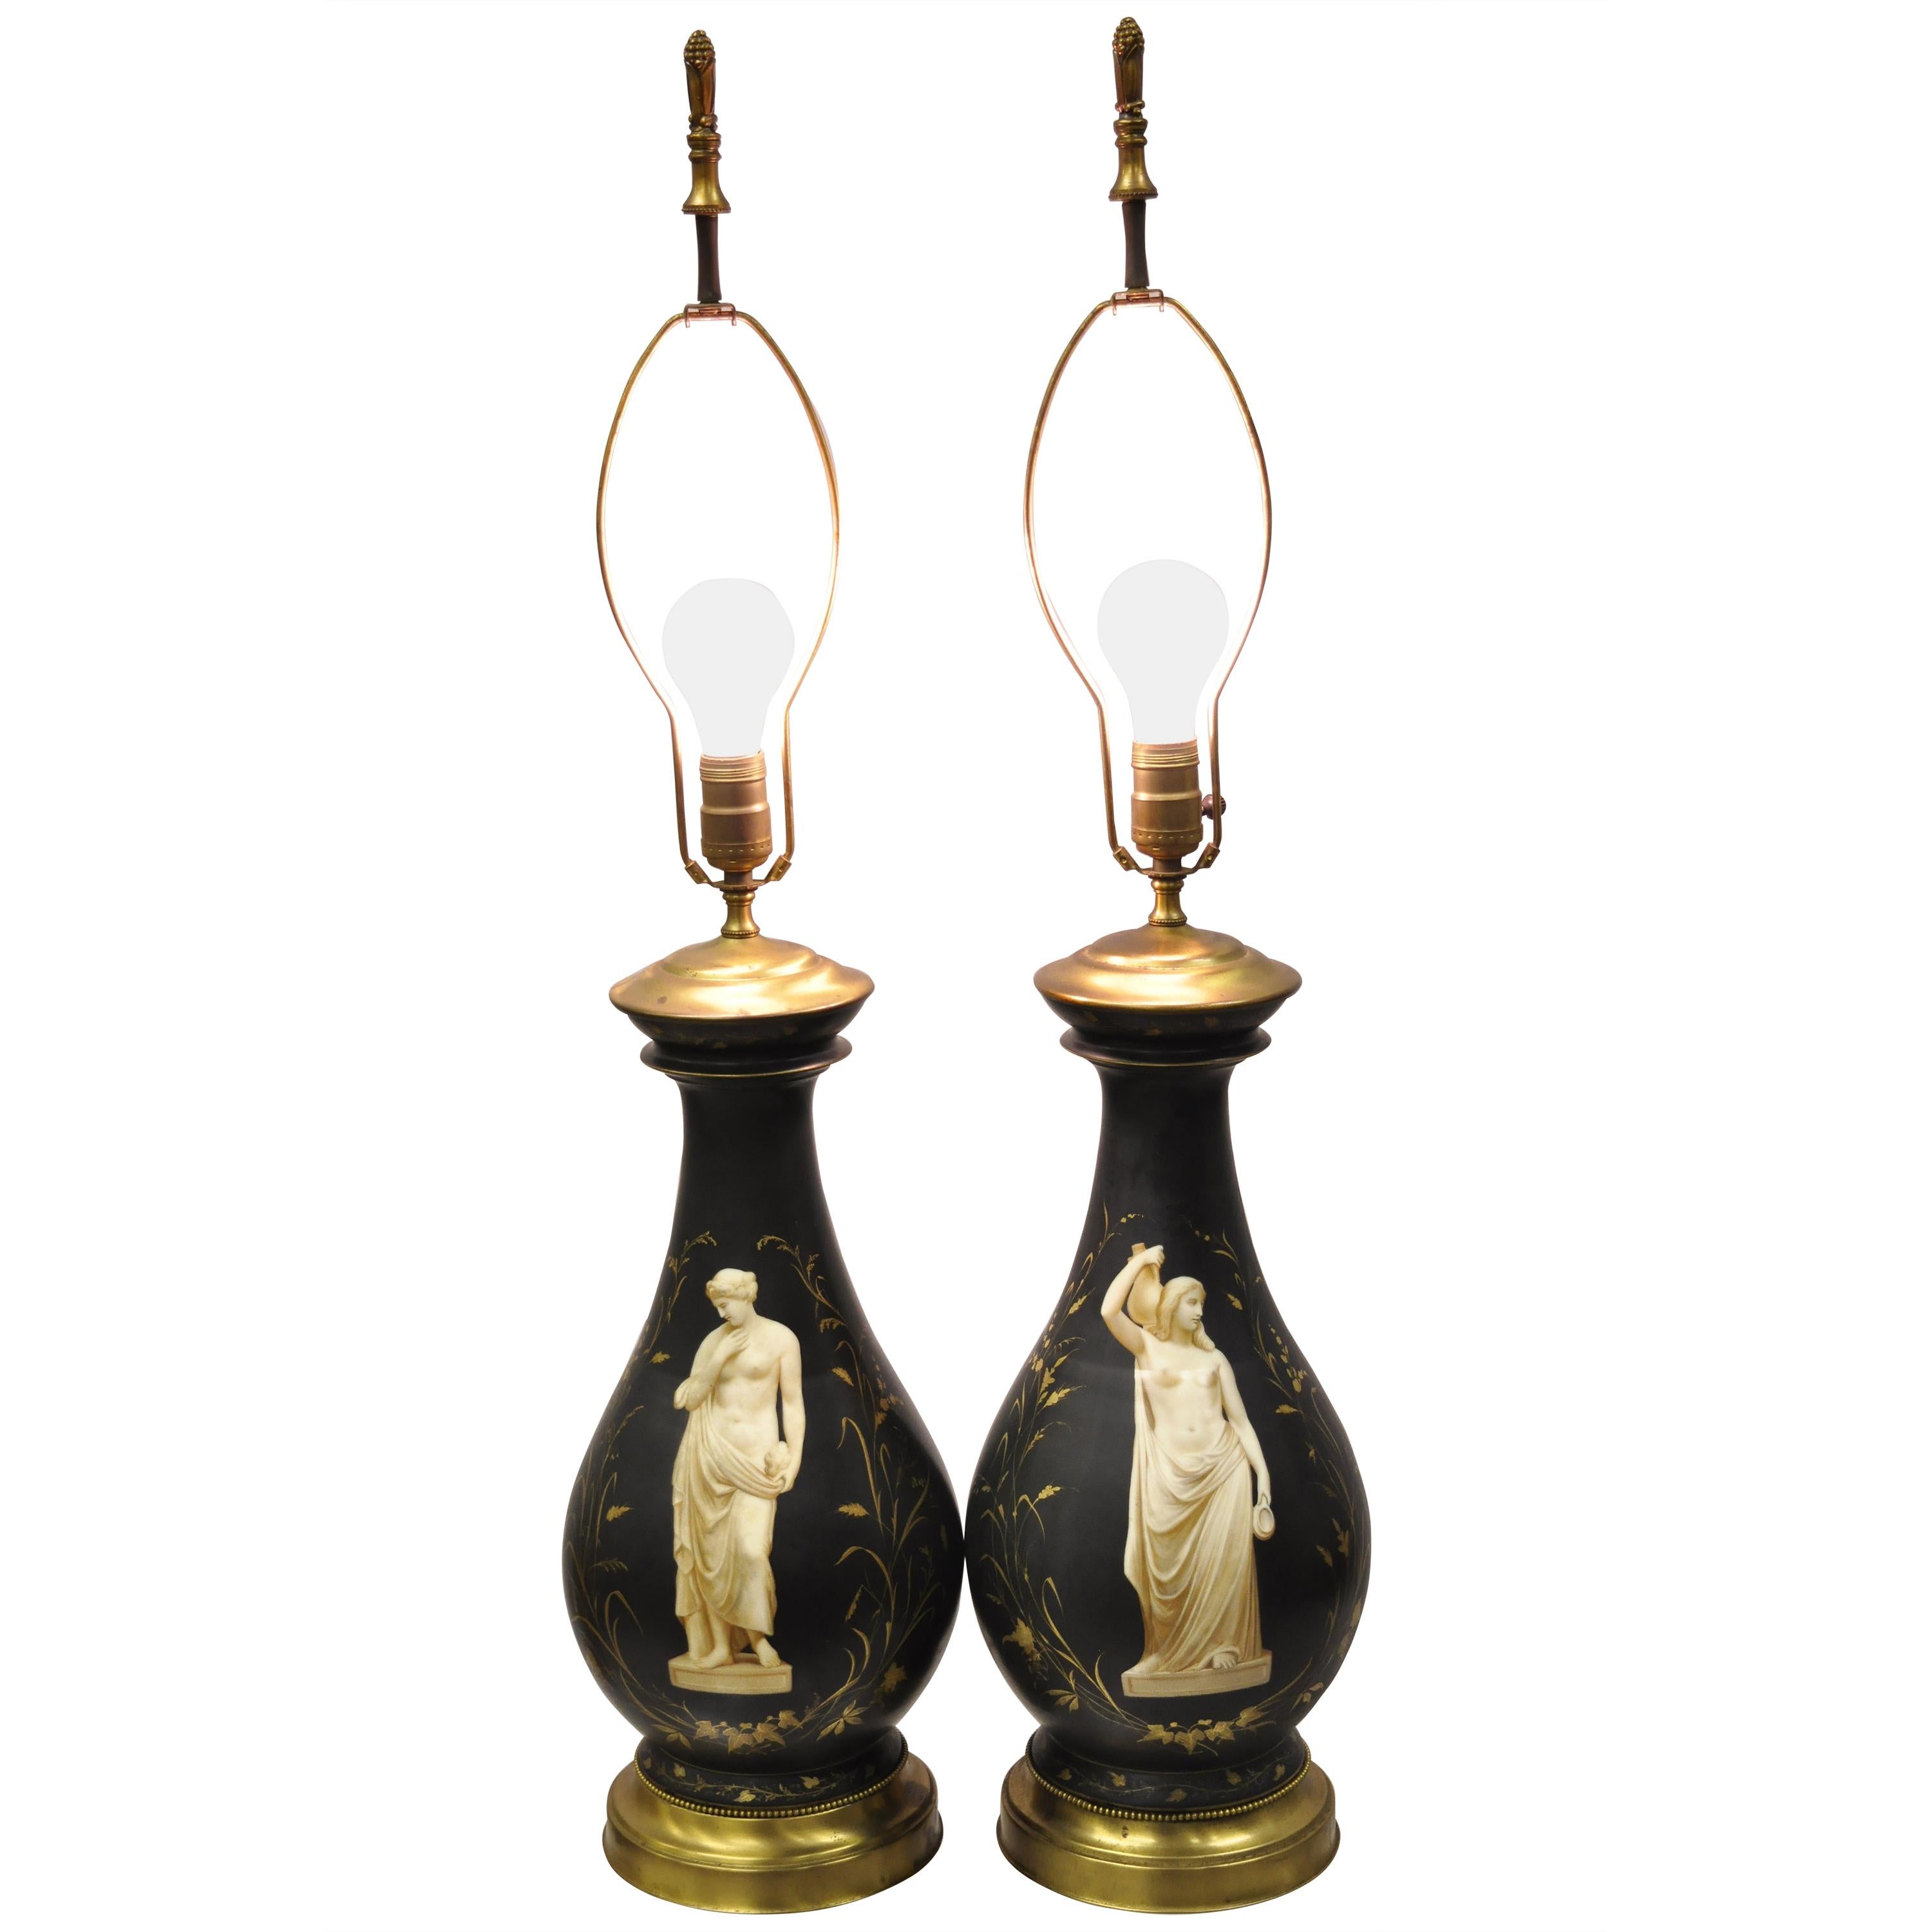 Antike französische neoklassizistische bauchige Tischlampen aus schwarzem Porzellan, klassisches Paar